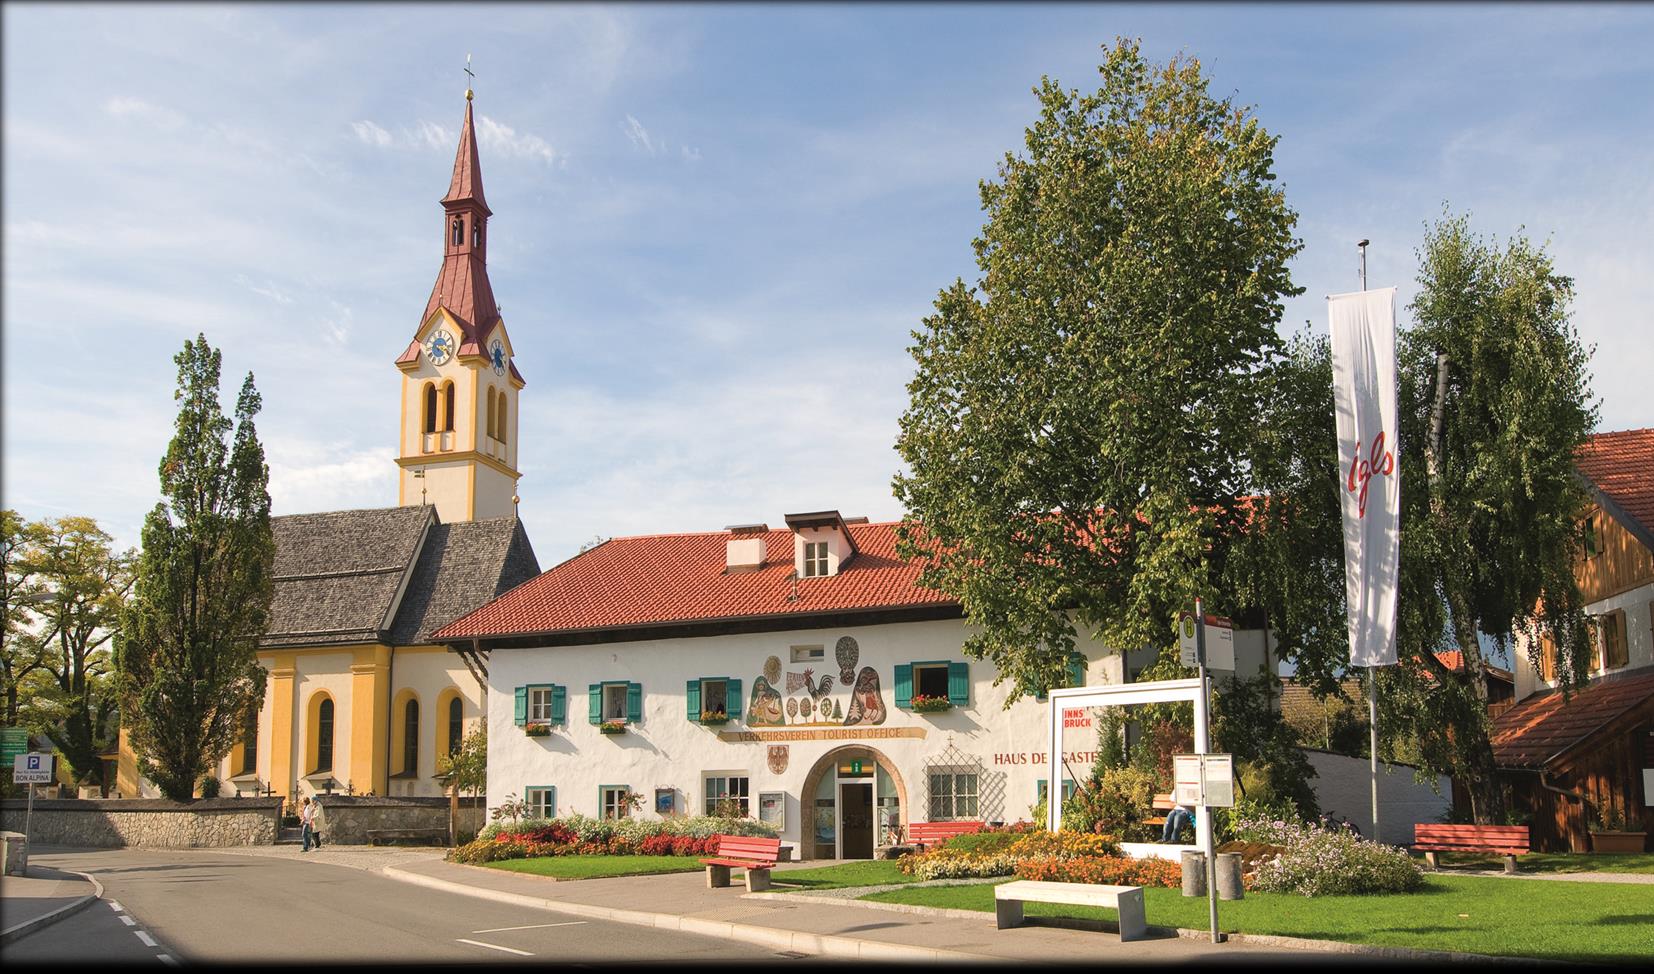 Igls n maalauksellisen kaunis kylä sijaitsee lähes 900 metriä merenpinnan yläpuolella, Innsbruckin kaupungin aurinkoterassilla, lähes puoli kilometriä kaupungin keskustaa korkeammalla.